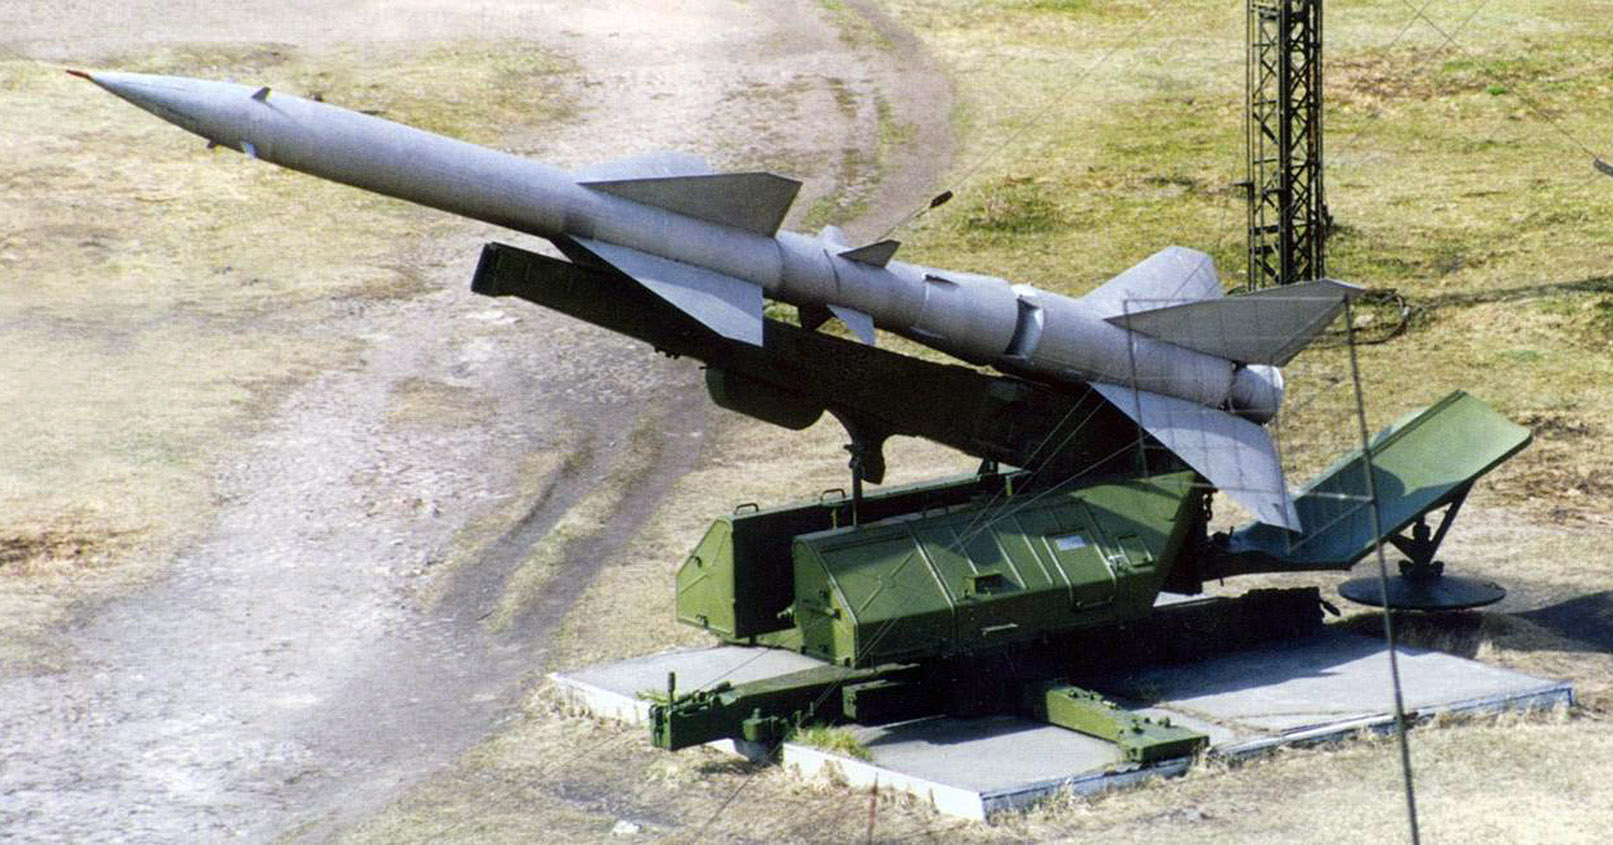 Советское пво. Зенитный ракетный комплекс с-75 «Двина». Ракета ЗРК С-75 Двина. С-75 зенитный ракетный комплекс Волхов. Са-75 Двина.